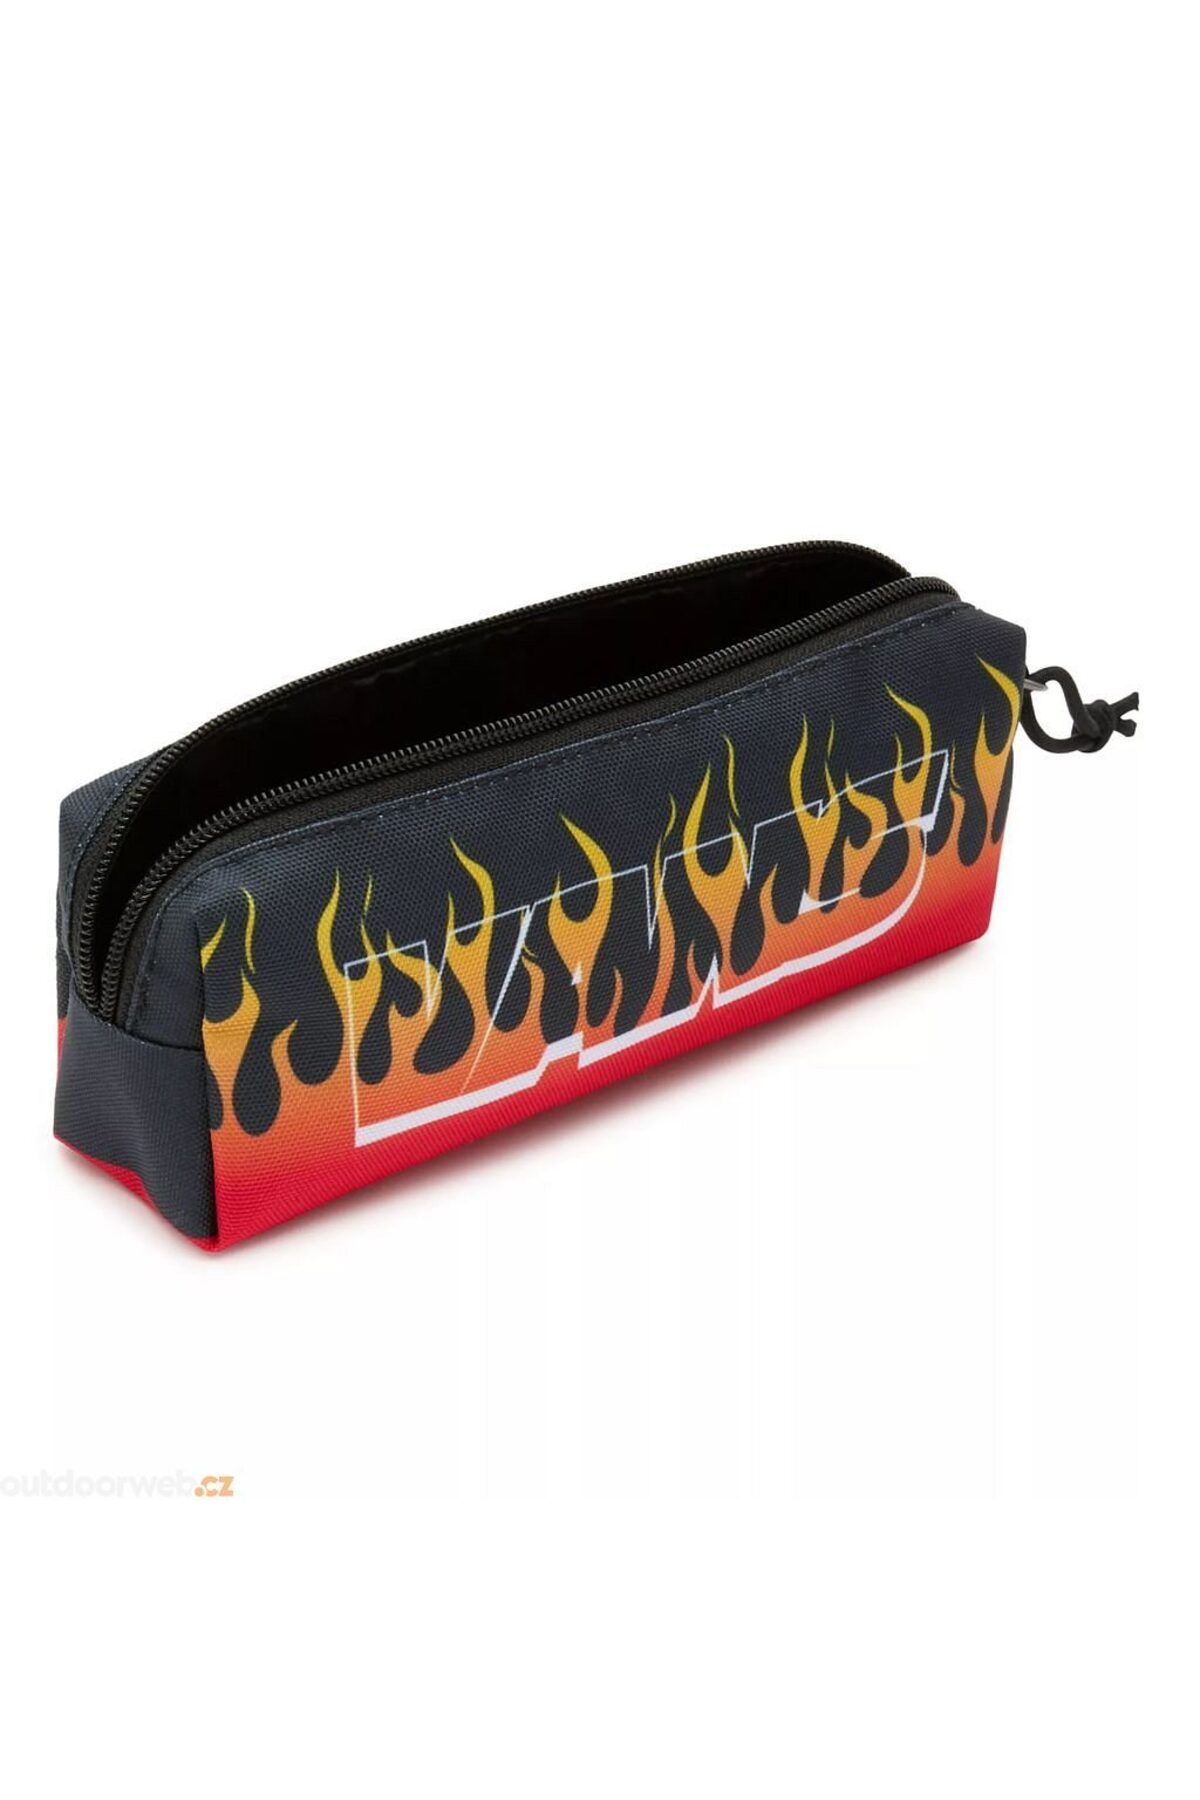 Vans Ateşli Siyah Kırmızı Sarı Özel Vans Yazılı Kalem Kutu